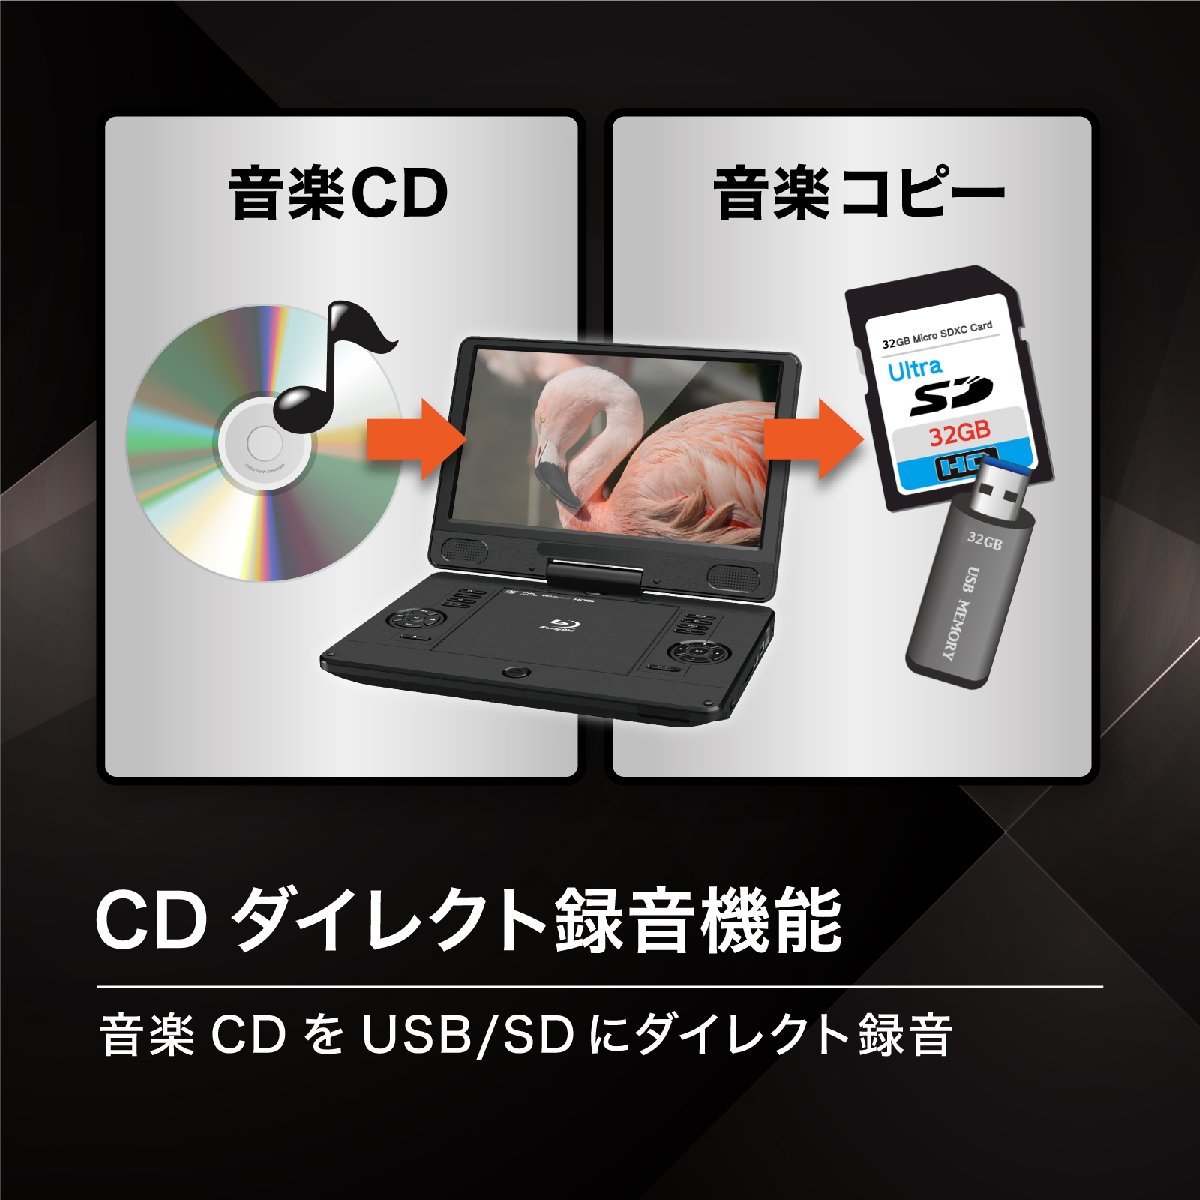 BLUEWIDE 11.6 дюймовый портативный Blue-ray плеер BD-LIVE зарядка аккумулятор CPRM 3 источник питания японский язык 